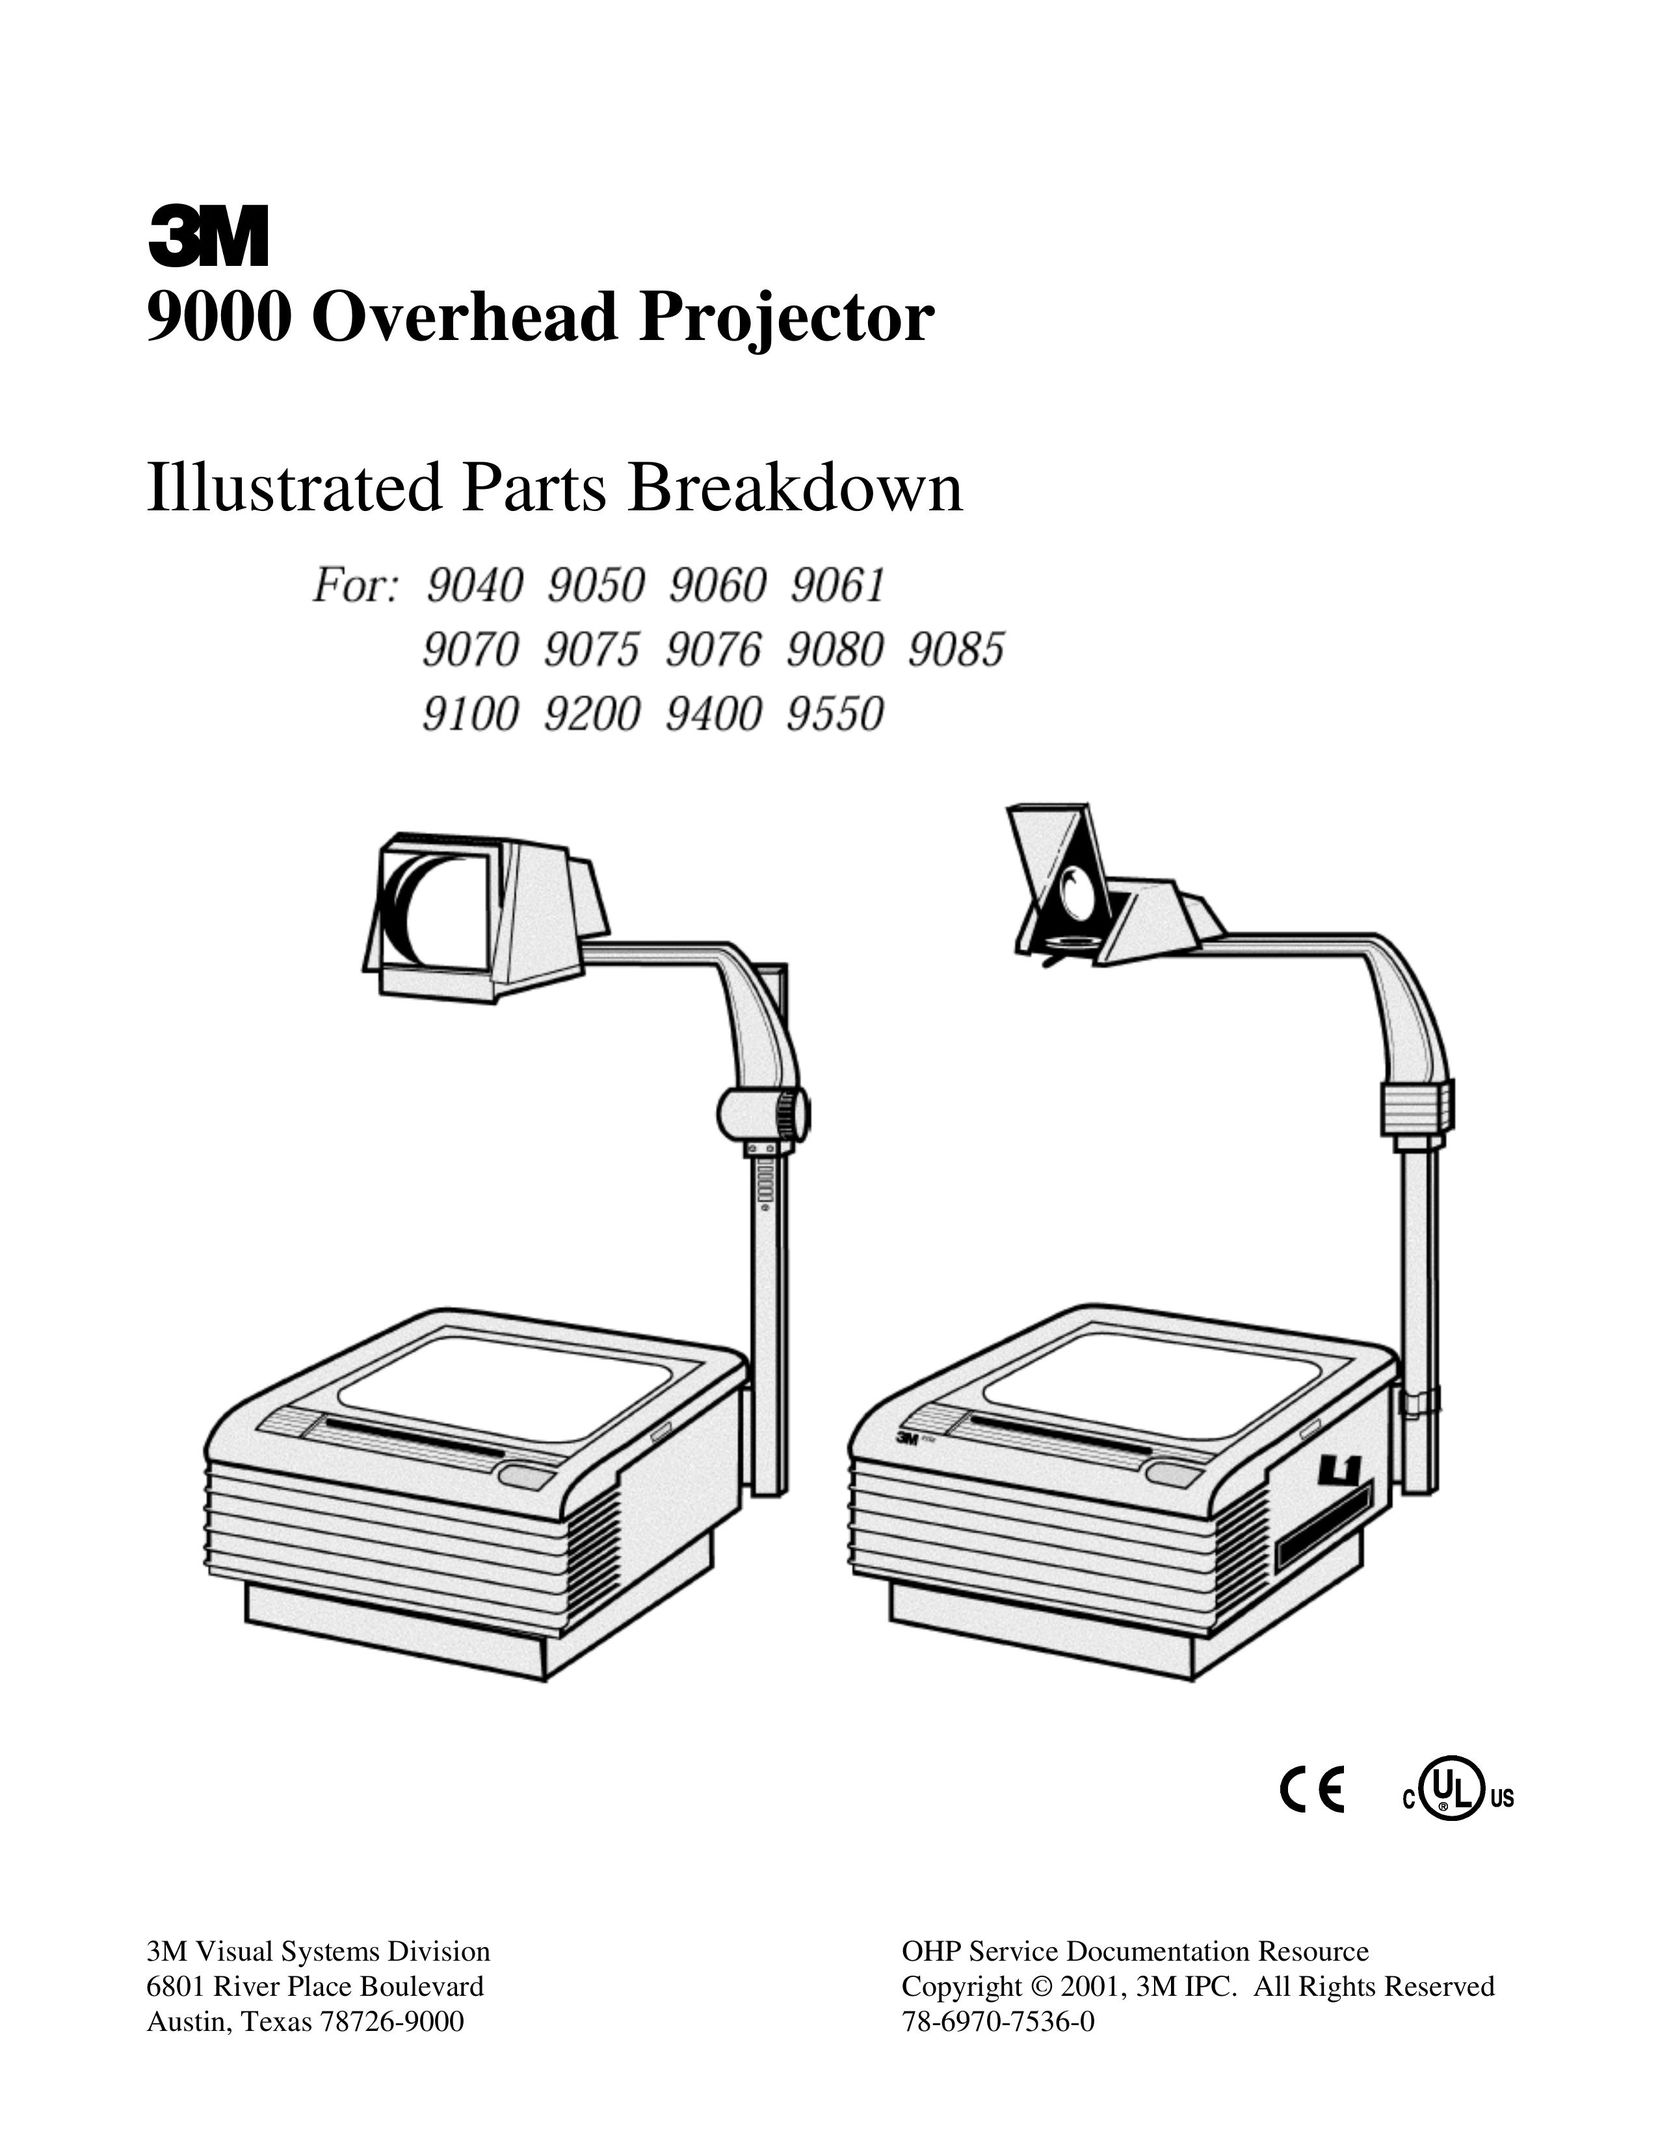 Xerox 9075 Projector User Manual